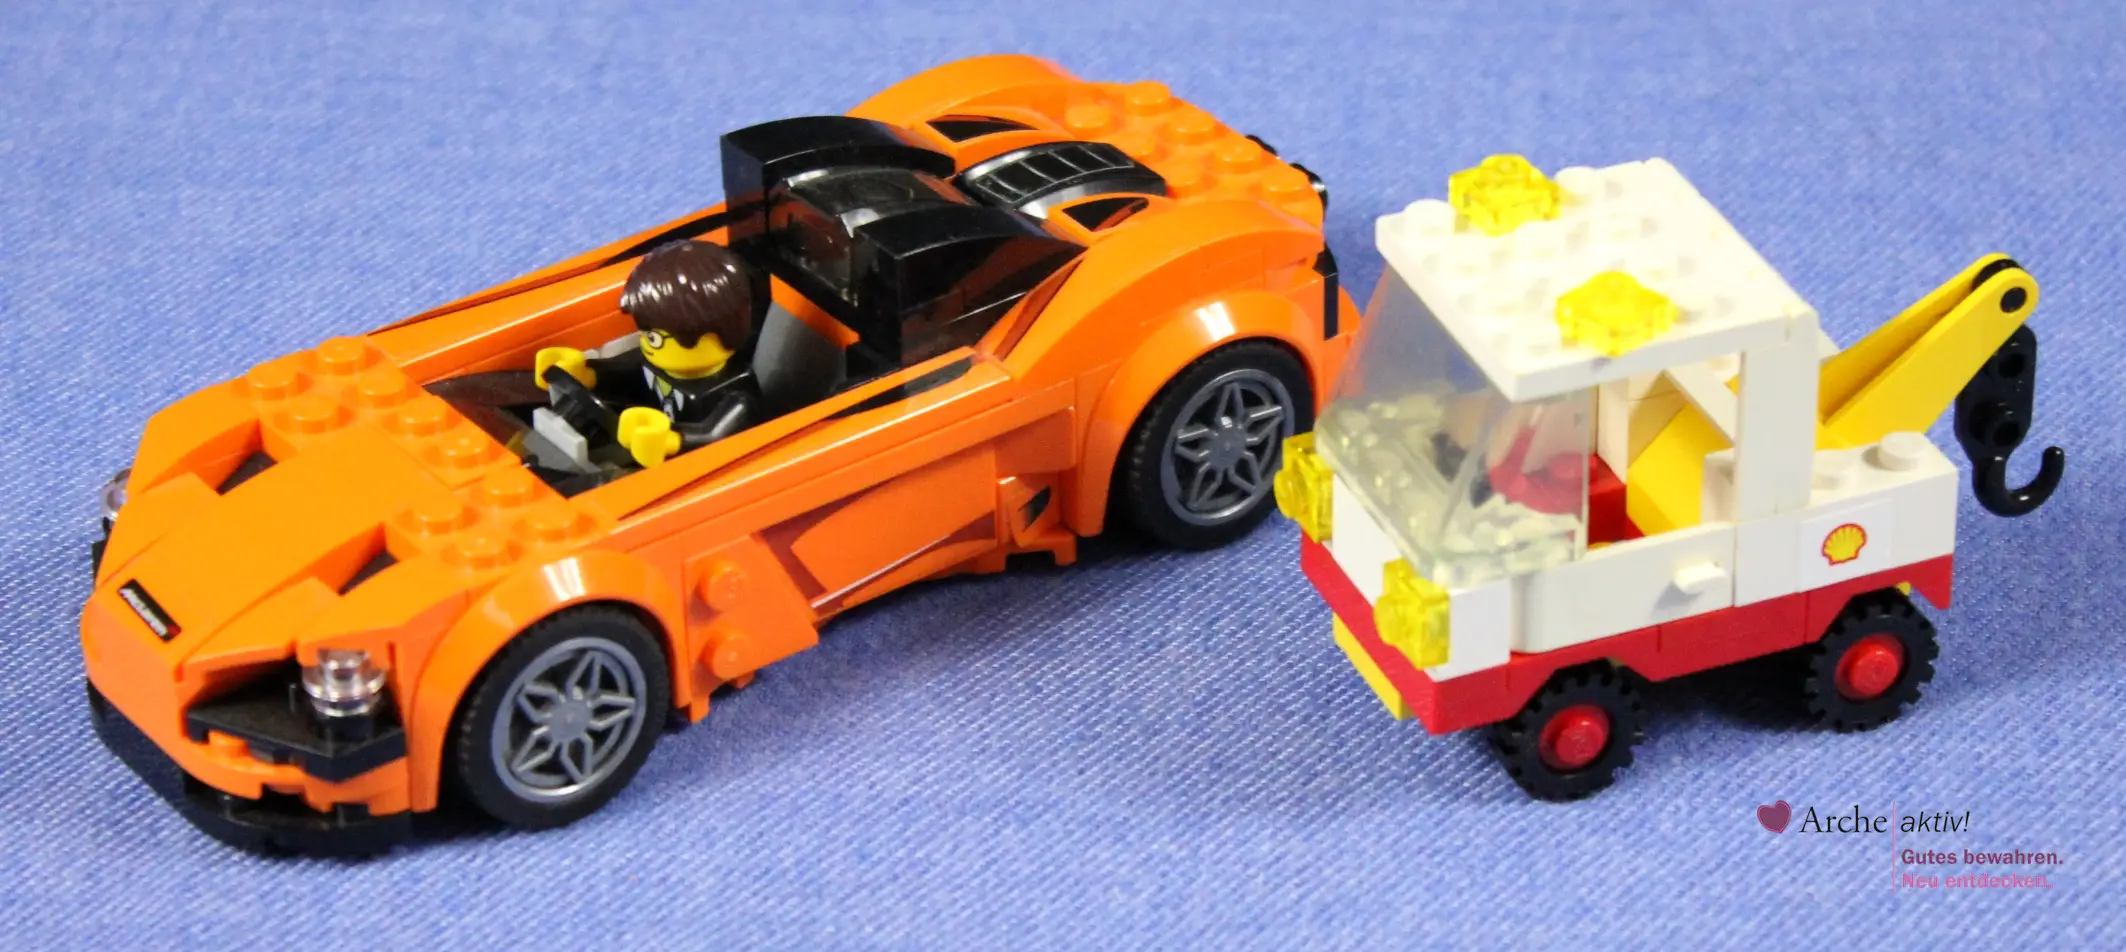 Lego Autos Speed Champions und Shell Abschleppwagen, gebraucht